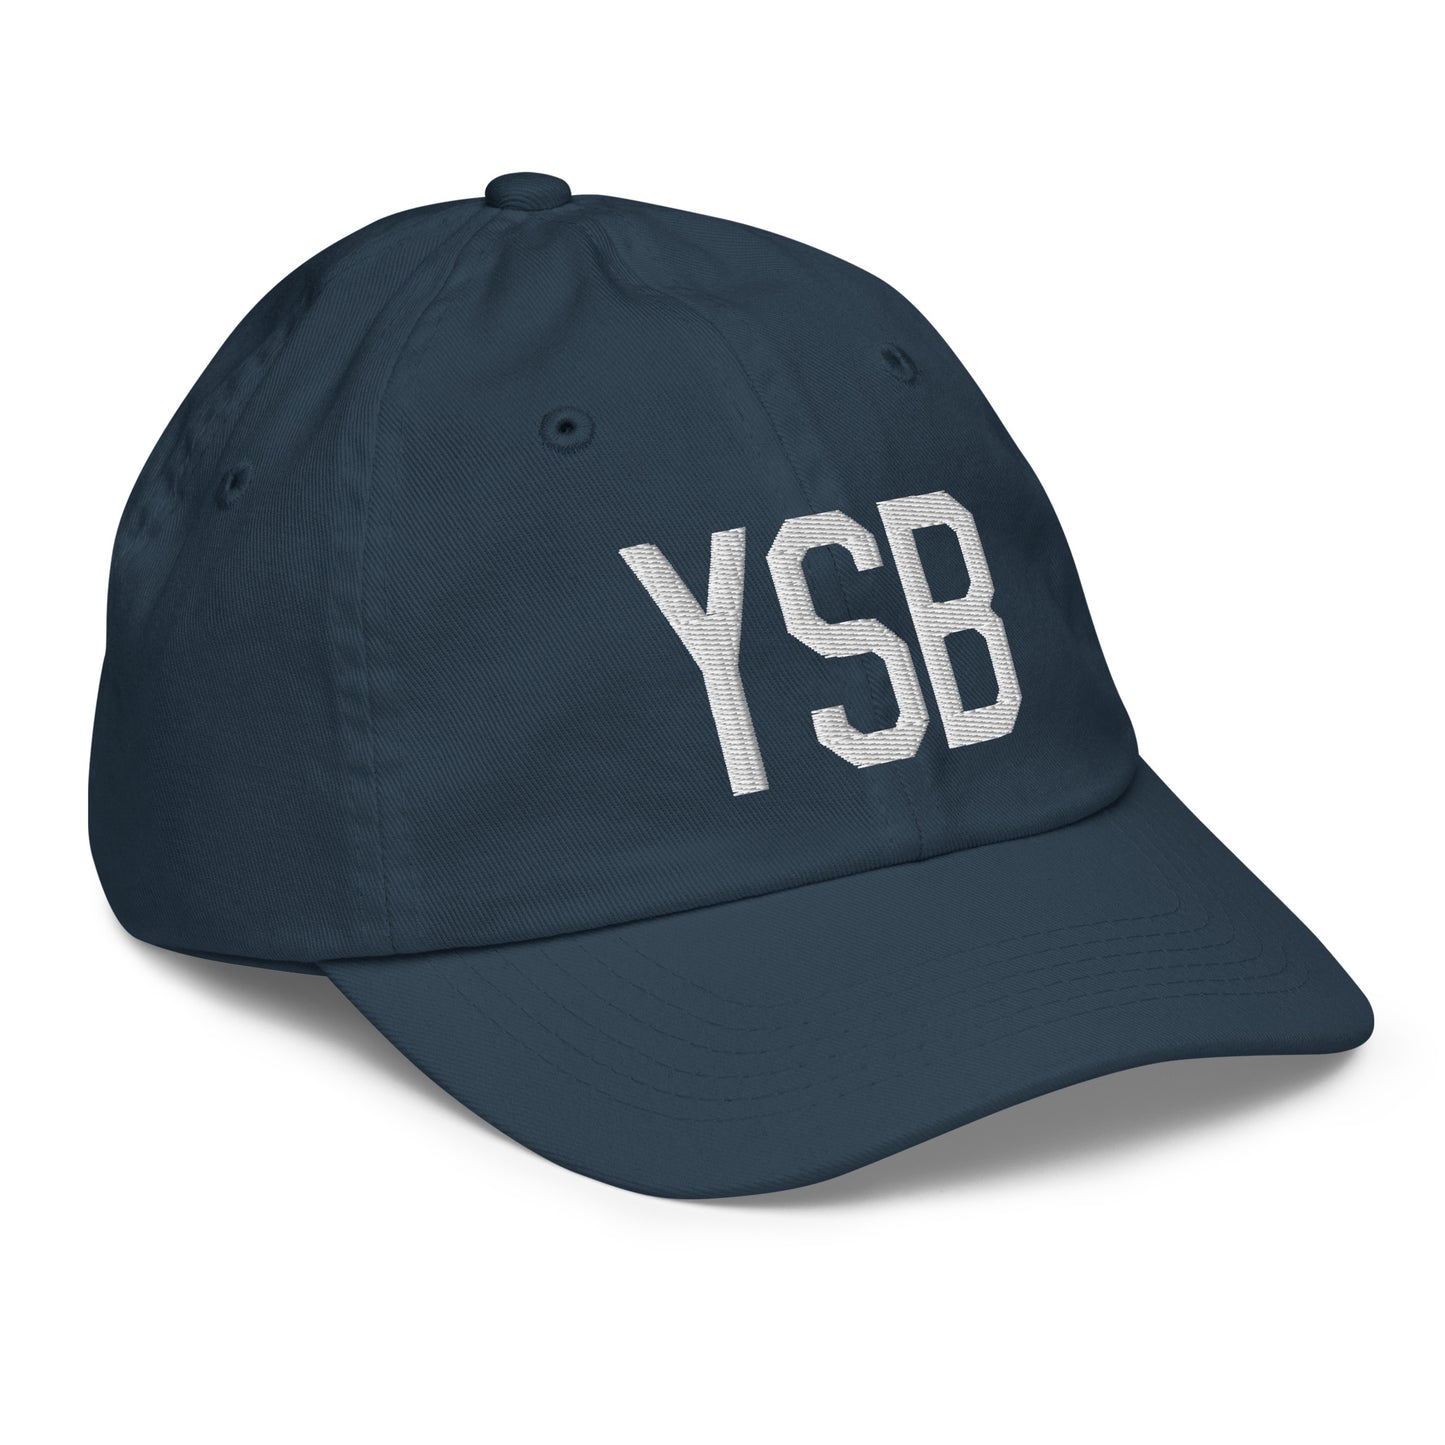 Airport Code Kid's Baseball Cap - White • YSB Sudbury • YHM Designs - Image 15